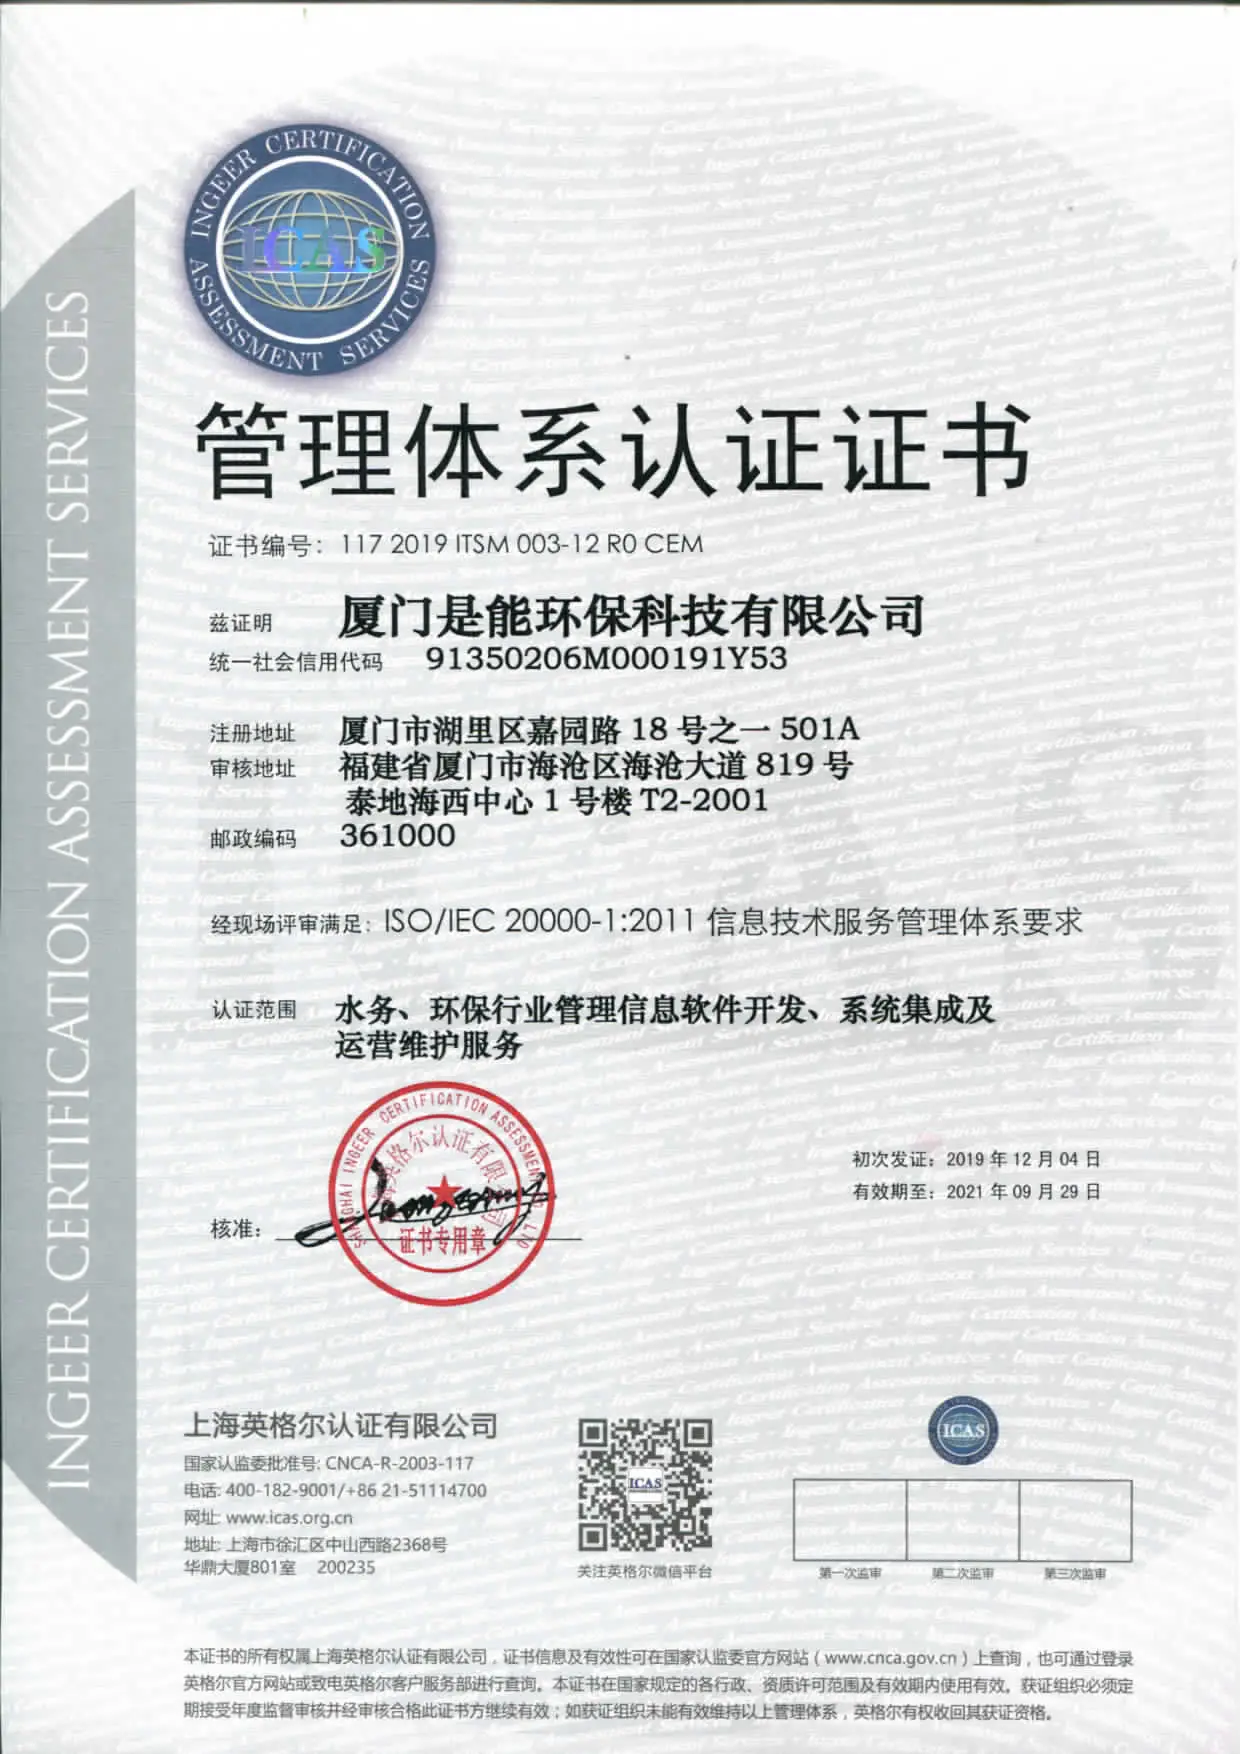 ISO/IEC 20000-1:2011信息技术服务管理体系认证